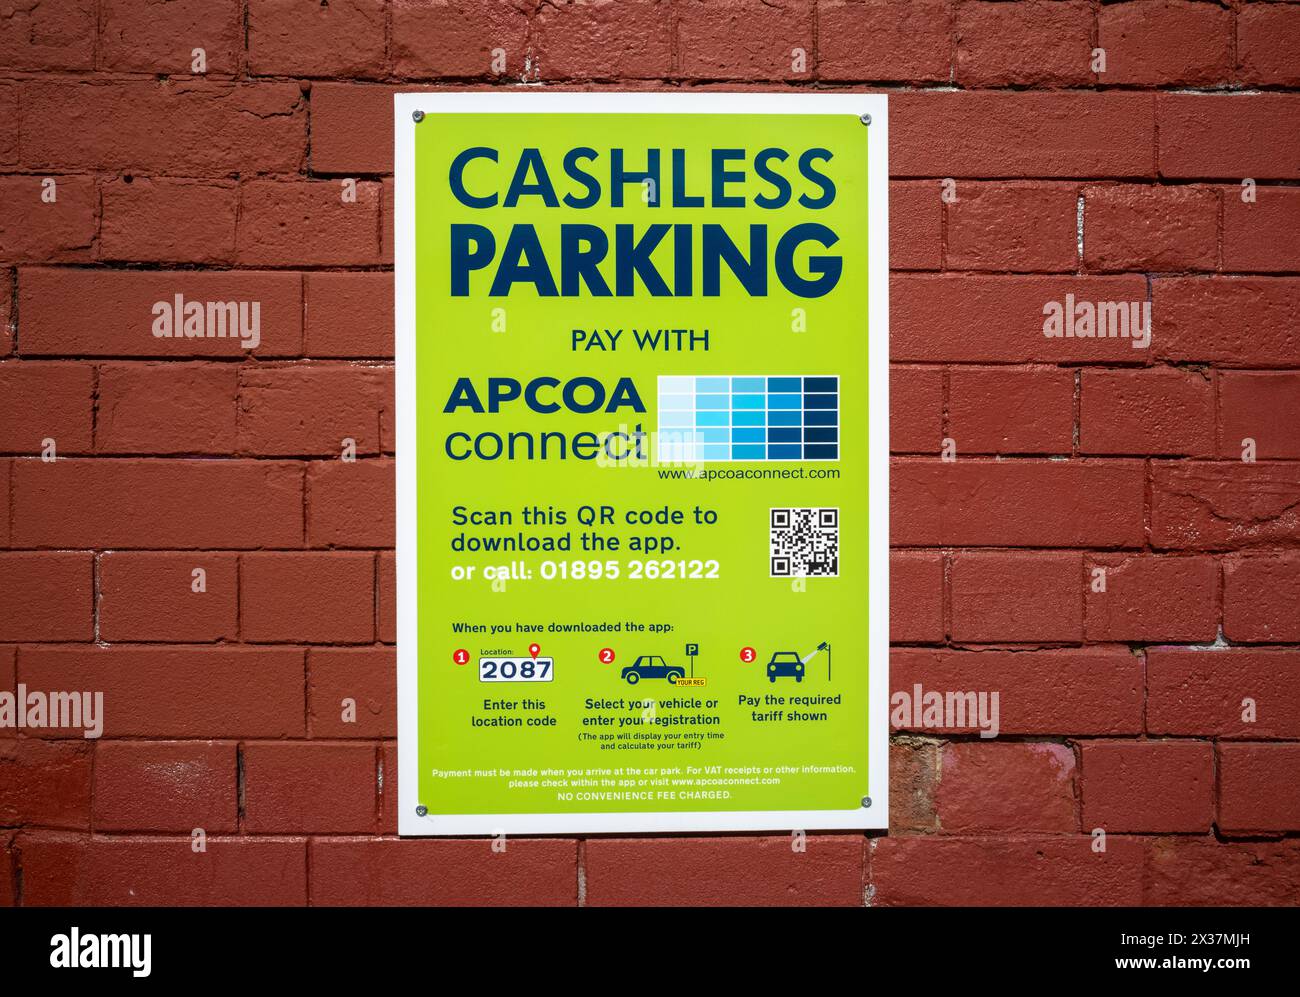 Ein kalkgrünes Schild mit Hinweis auf bargeldloses Parken und Anweisungen für telefonische Bezahlung für Parkmöglichkeiten, London, Großbritannien. Stockfoto